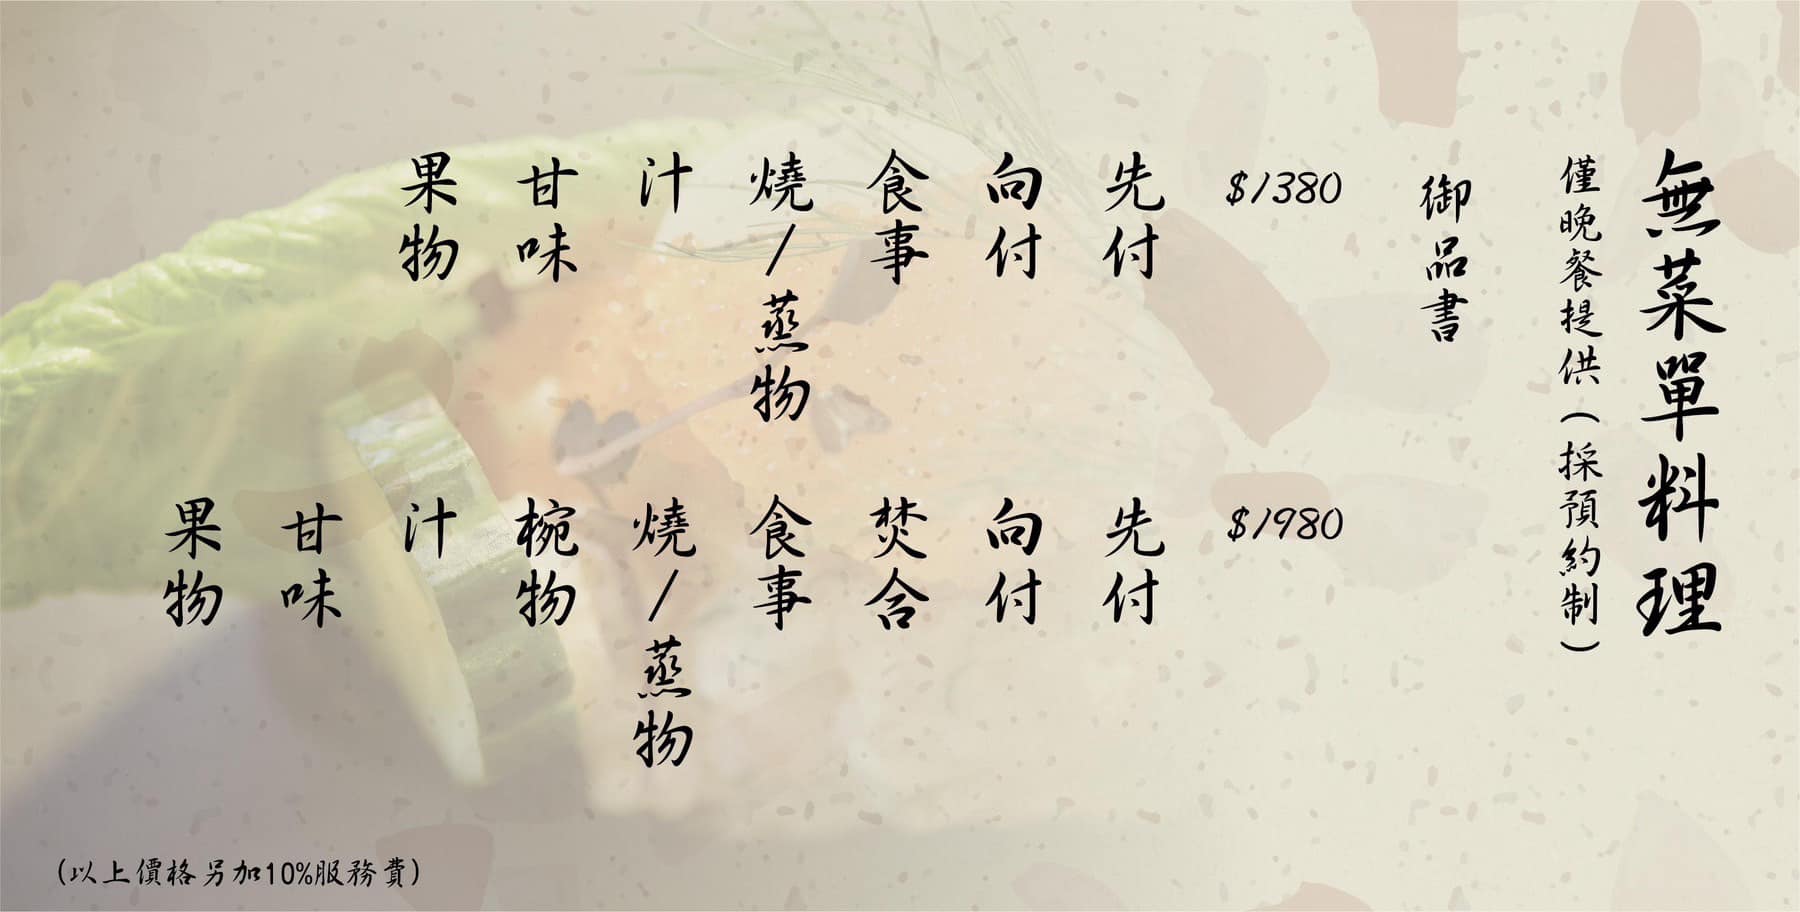 日式料理,無菜單料理,宜蘭美食,礁溪美食